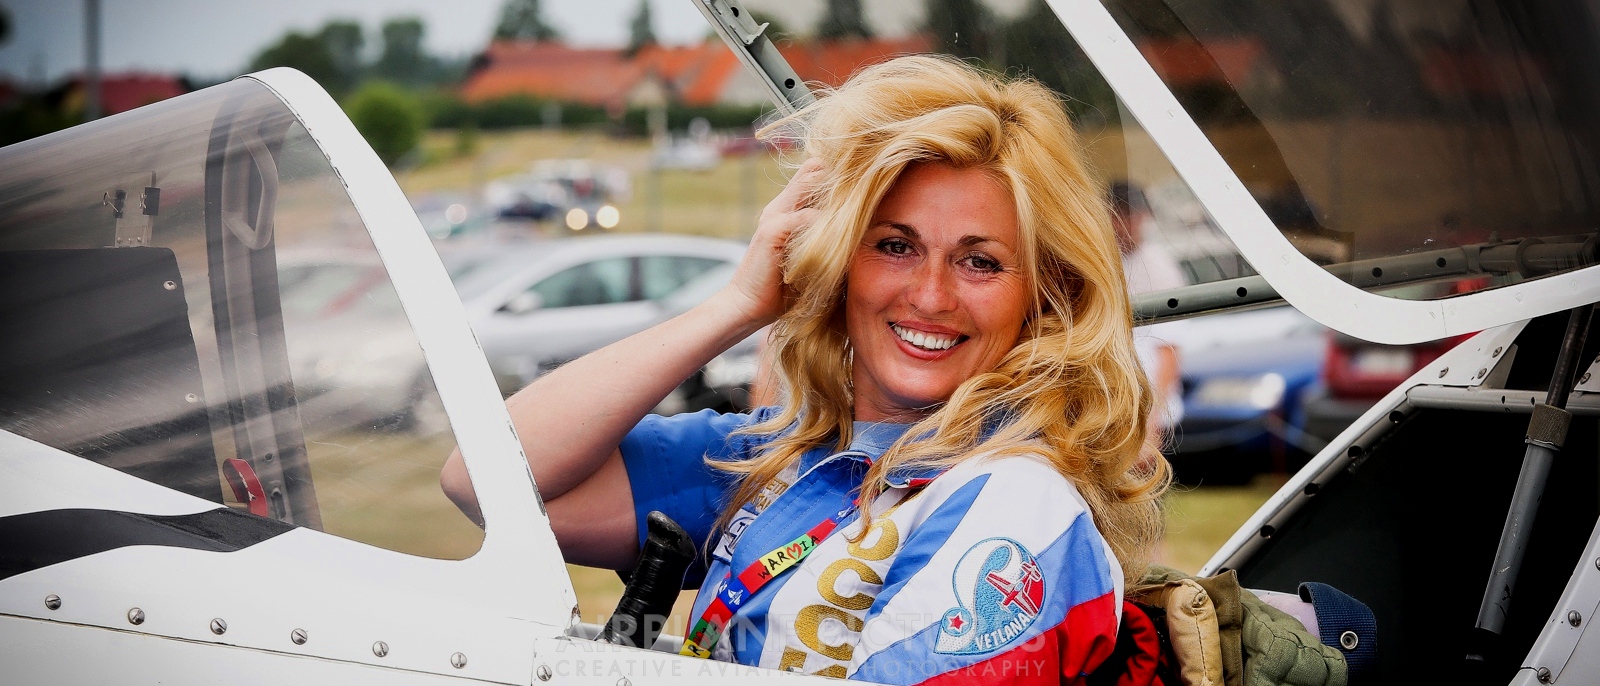 Σβετλάνα Καπανίνα: Η πανέμορφη πρωταθλήτρια αεροπορικών επιδείξεων! (βίντεο)